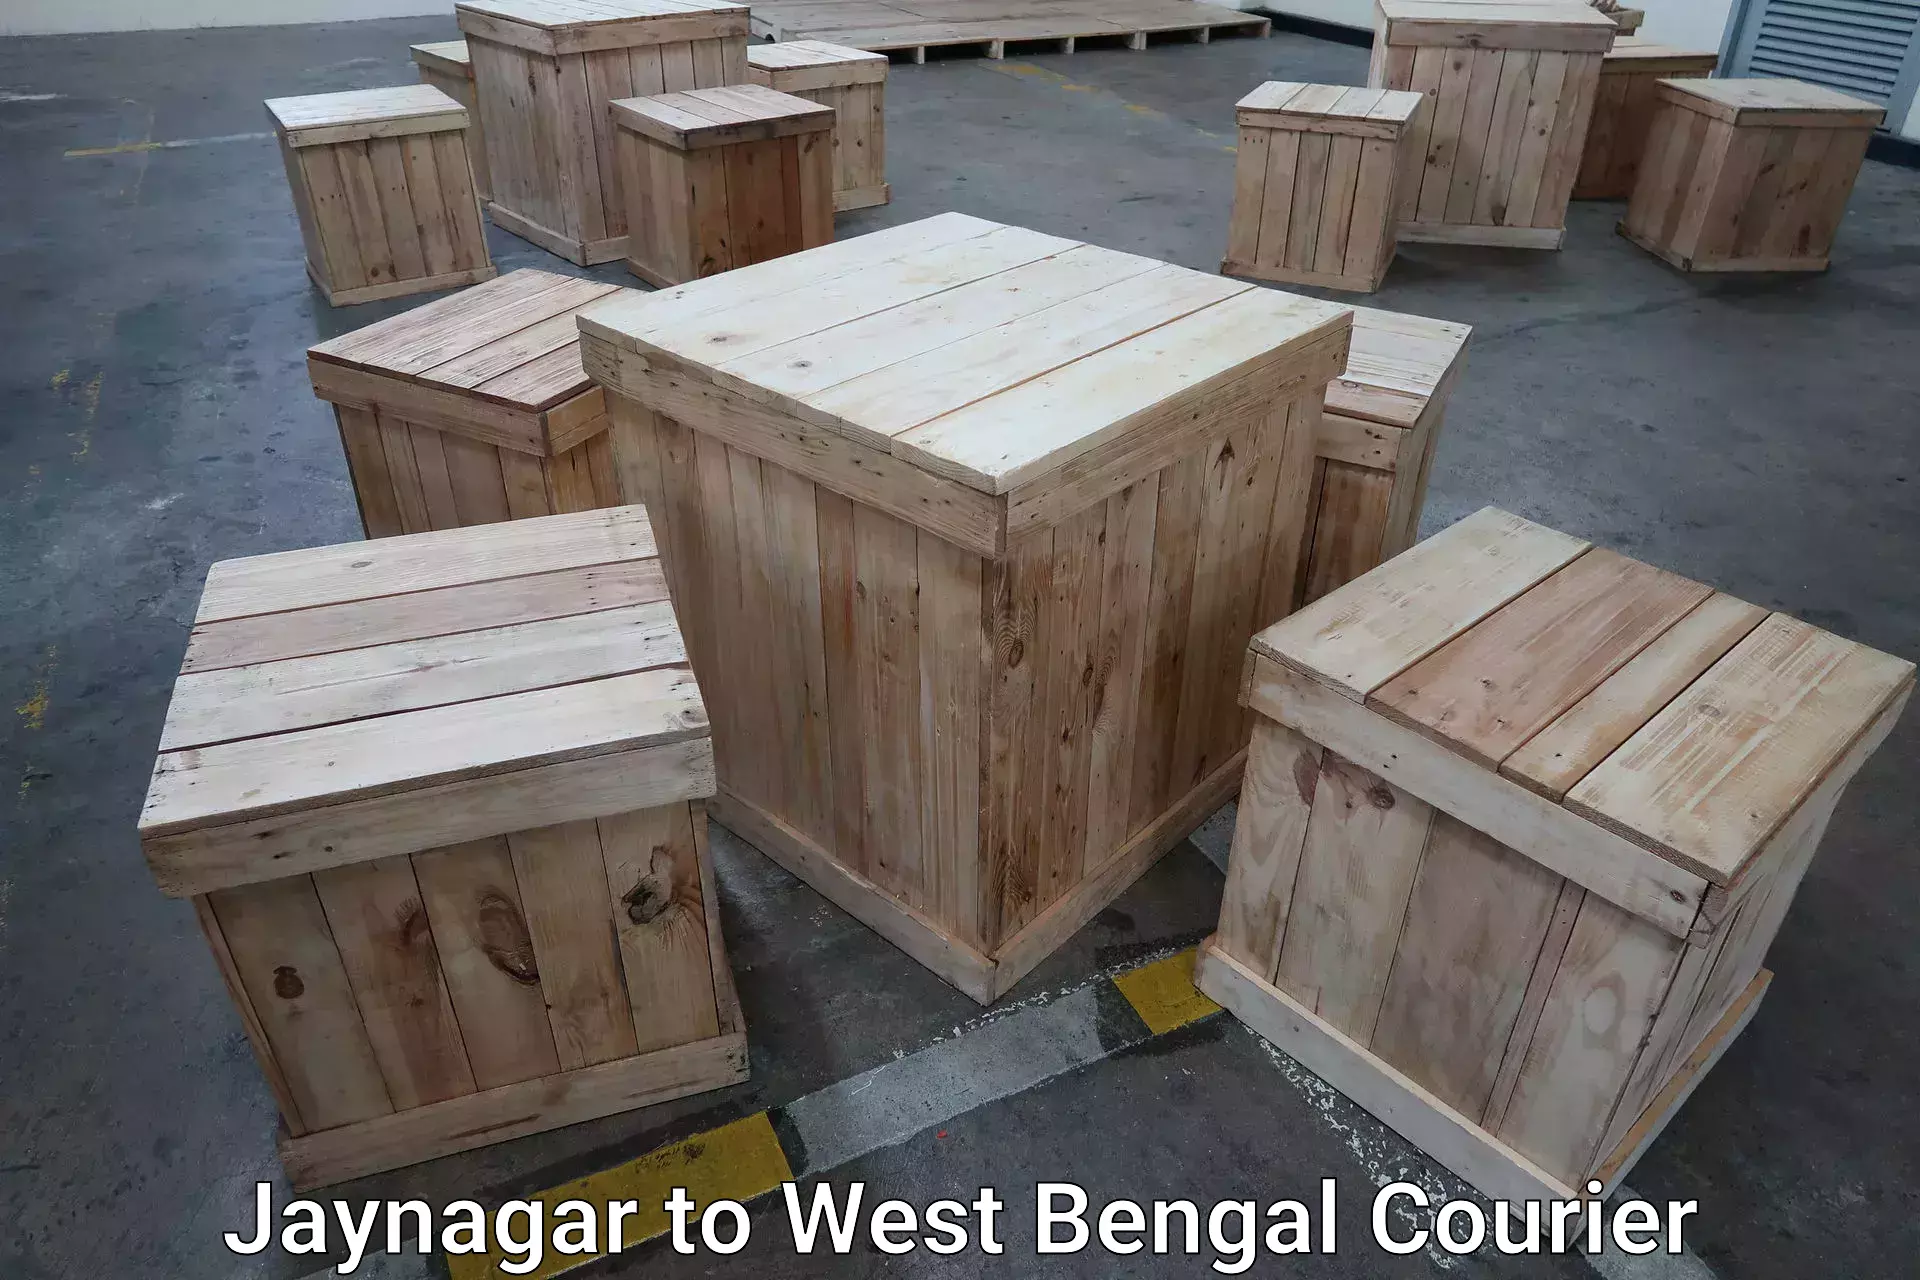 Baggage delivery estimate in Jaynagar to North 24 Parganas